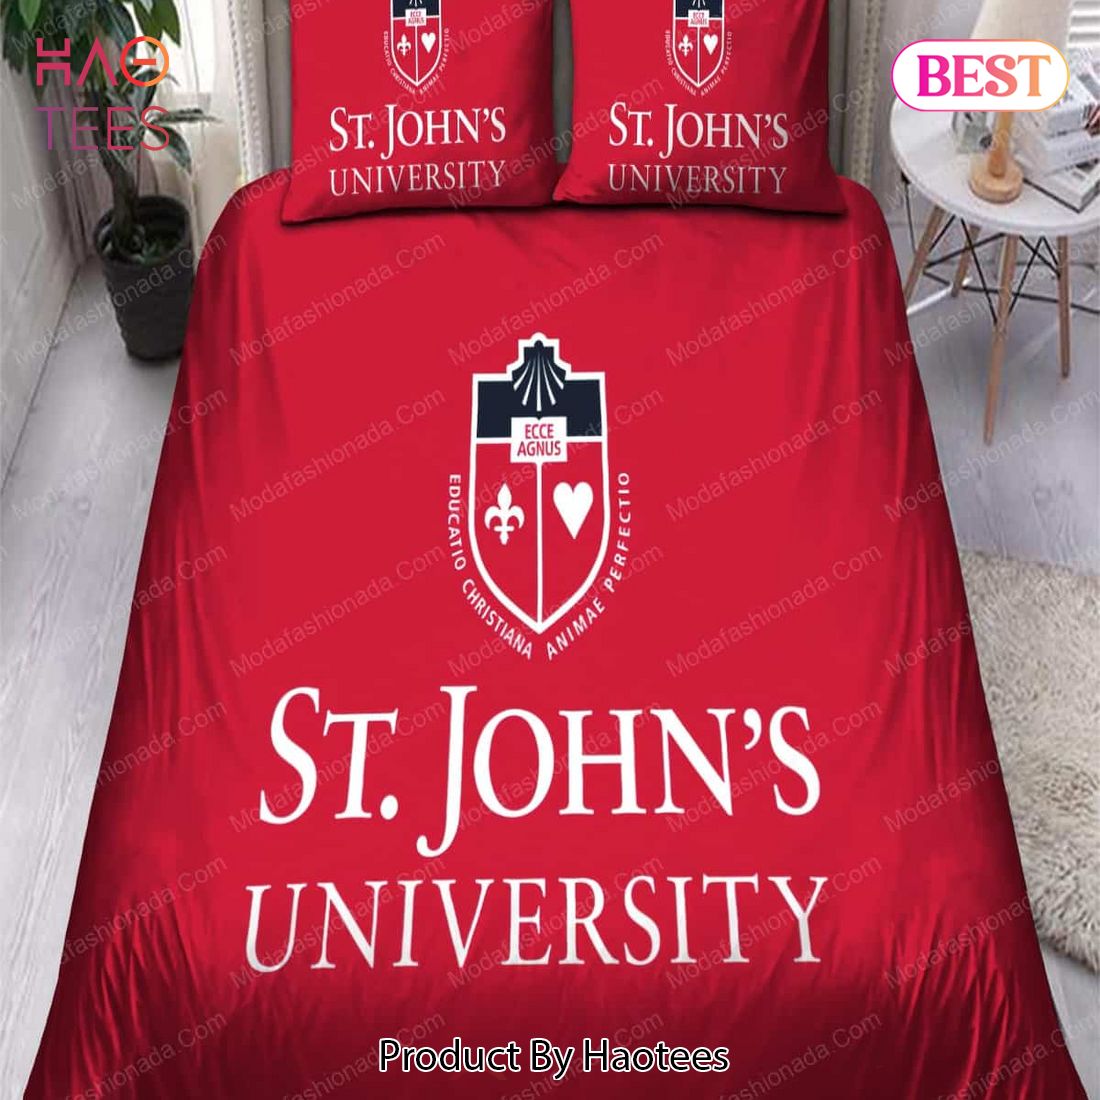 Buy St John's University Bedding Sets Bed Sets, Bedroom Sets, Comforter Sets, Duvet Cover, Bedspread